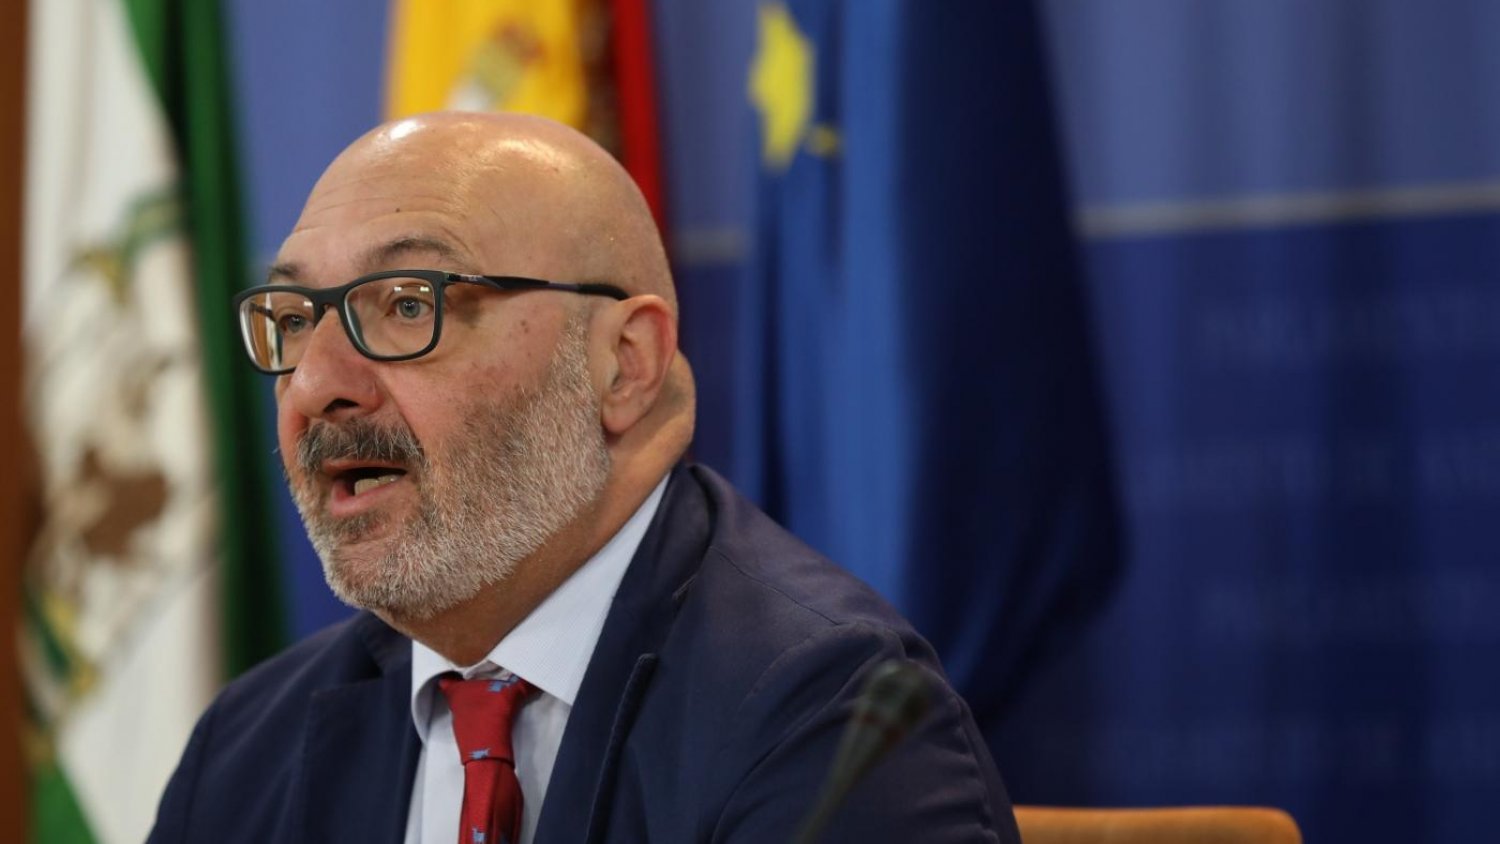 El Grupo Parlamentario VOX en Andalucía presenta una enmienda a la totalidad de los presupuestos